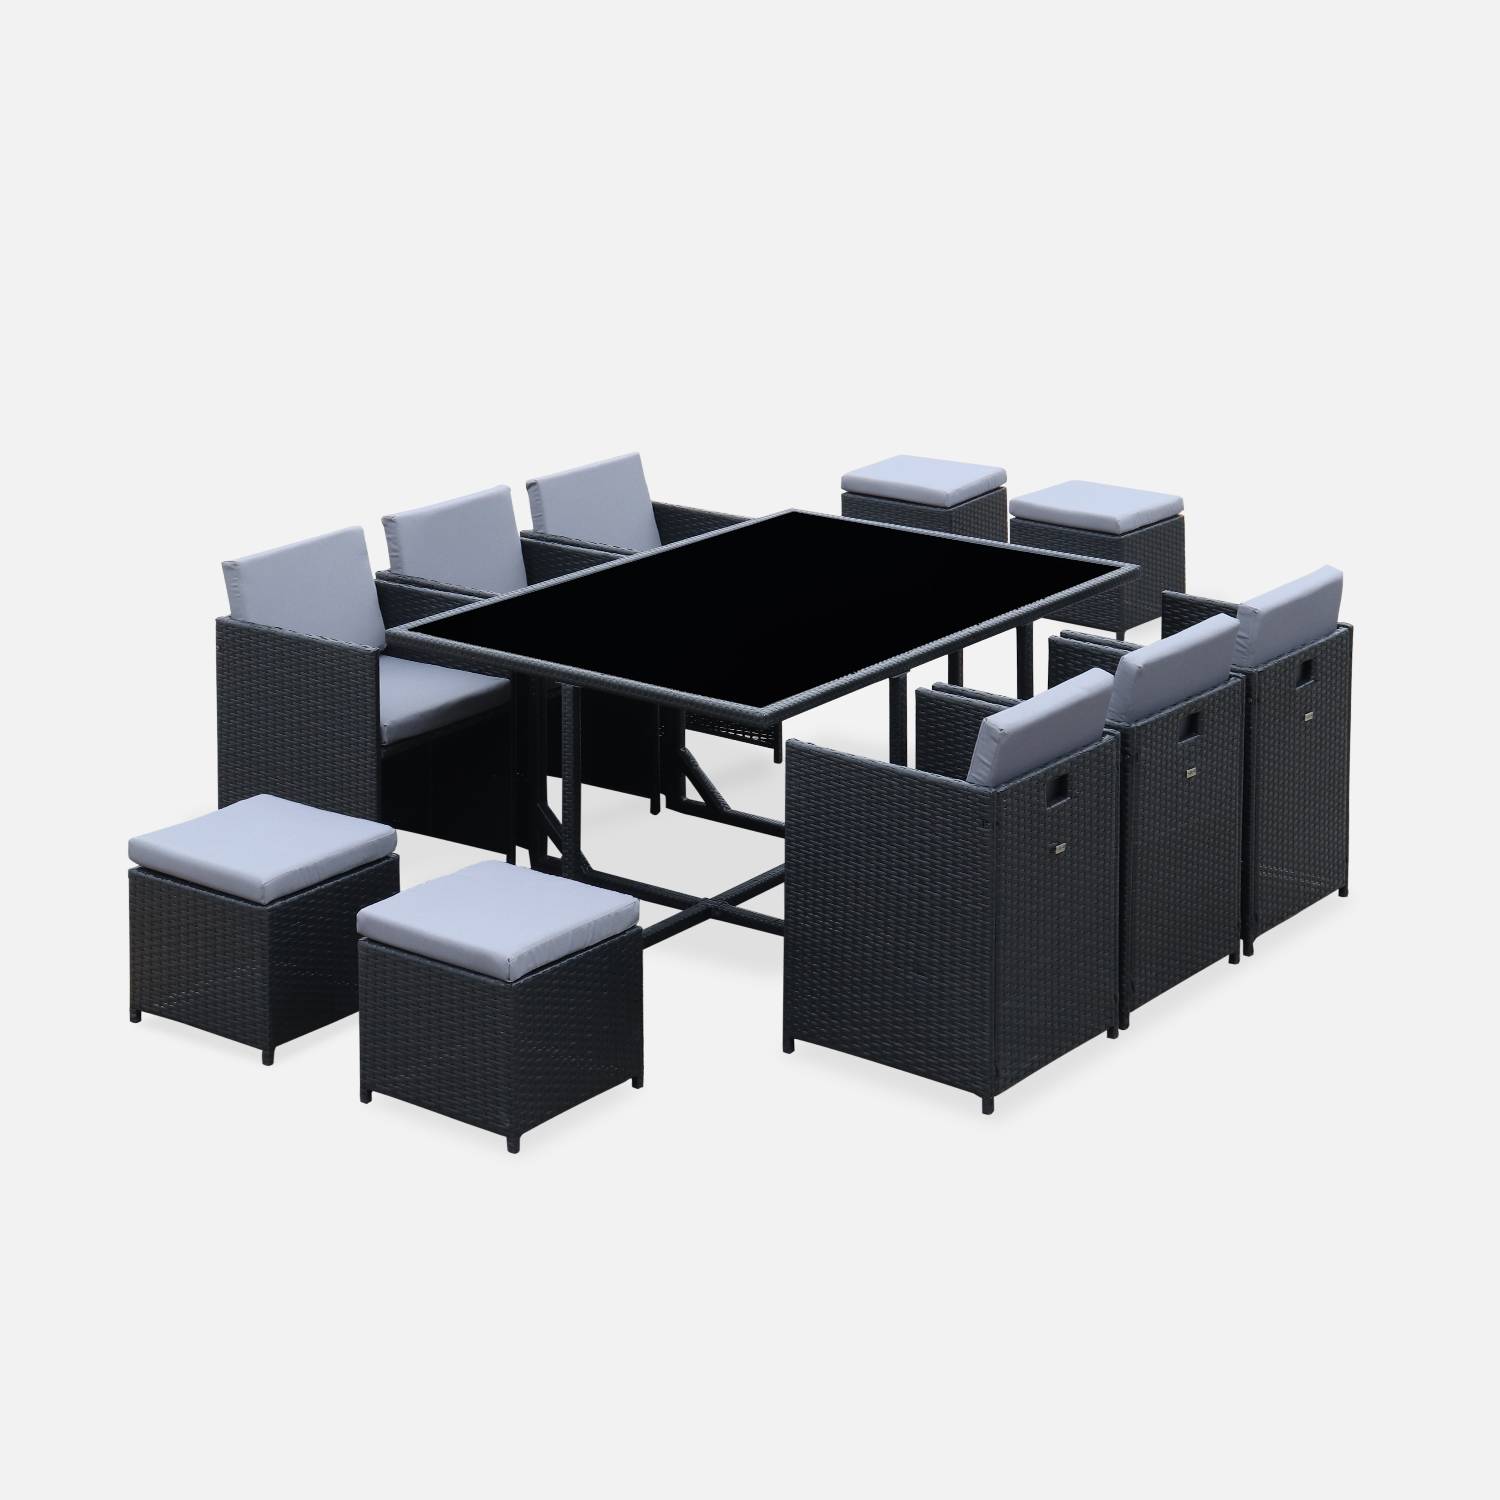 Conjunto de muebles de jardín 6-10 plazas - Fregadero - Color negro, cojines grises, mesa incorporada. Photo2